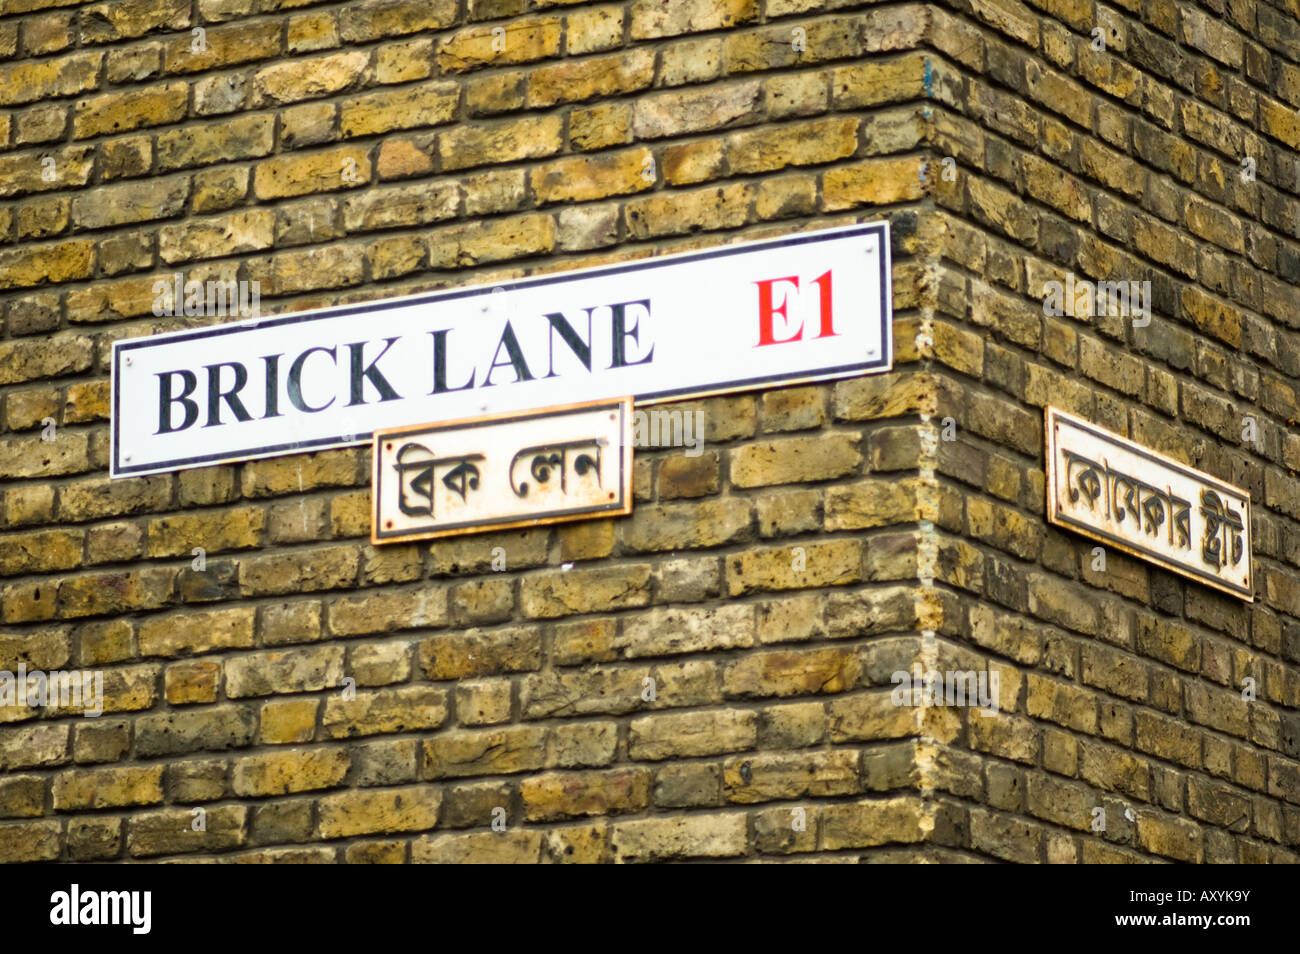 Brick Lane street anmelden Englisch und Bengali, London, Großbritannien Stockfoto